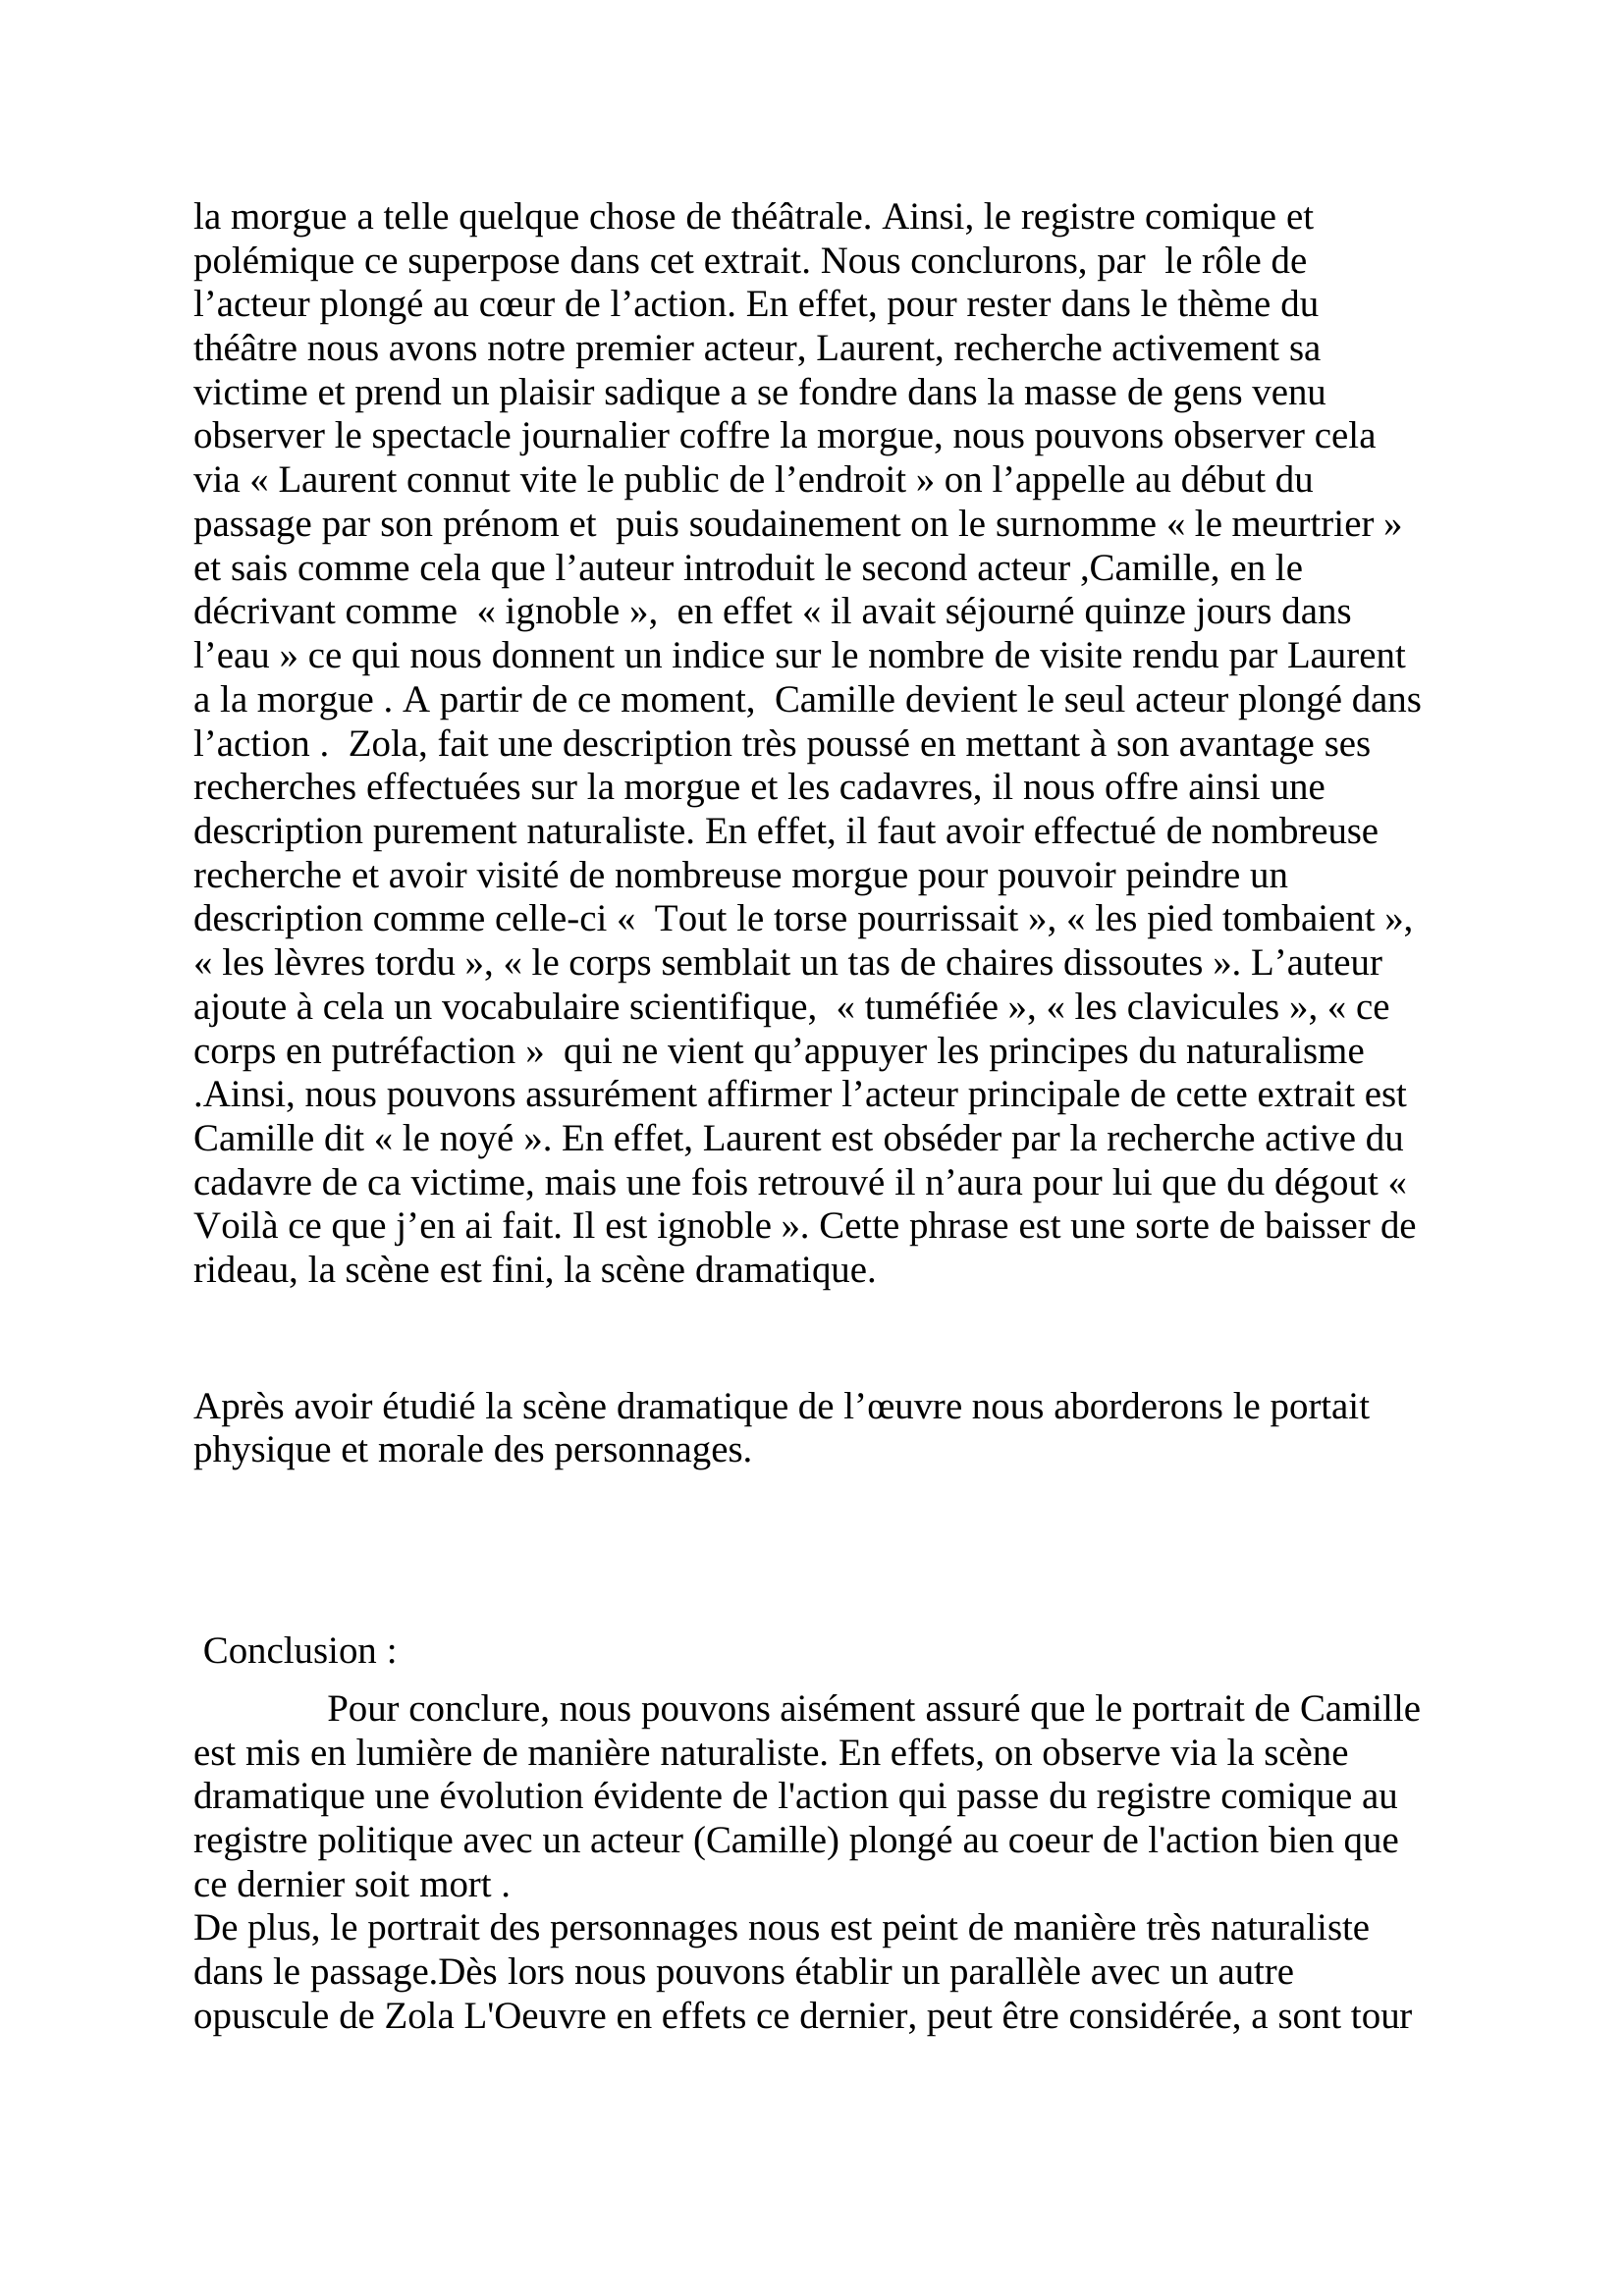 Prévisualisation du document Introduction + I commentaire littéraire de Thérèse Raquin  + Conclusion